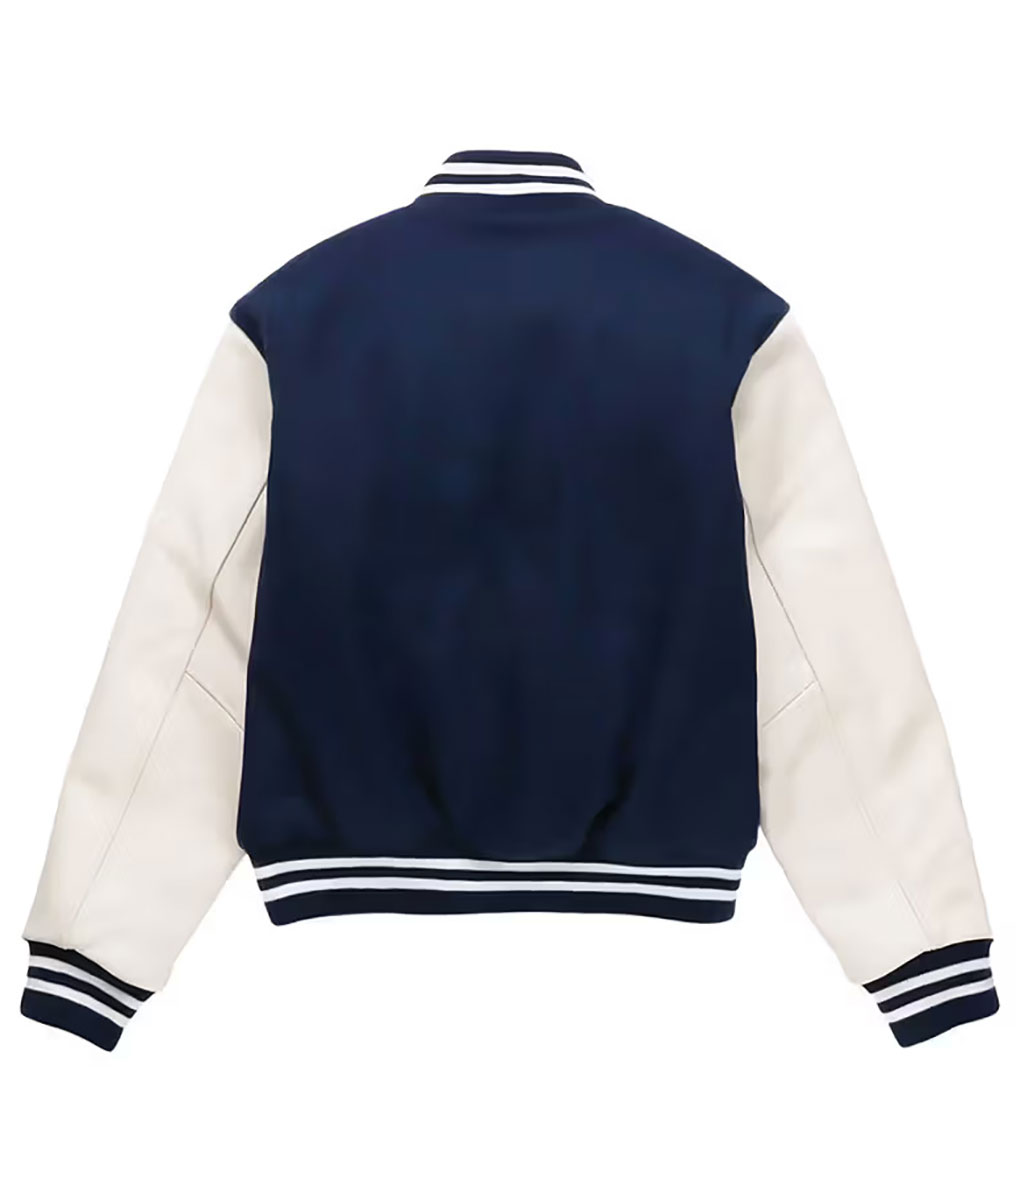 SZA Blue Varsity Jacket (2)